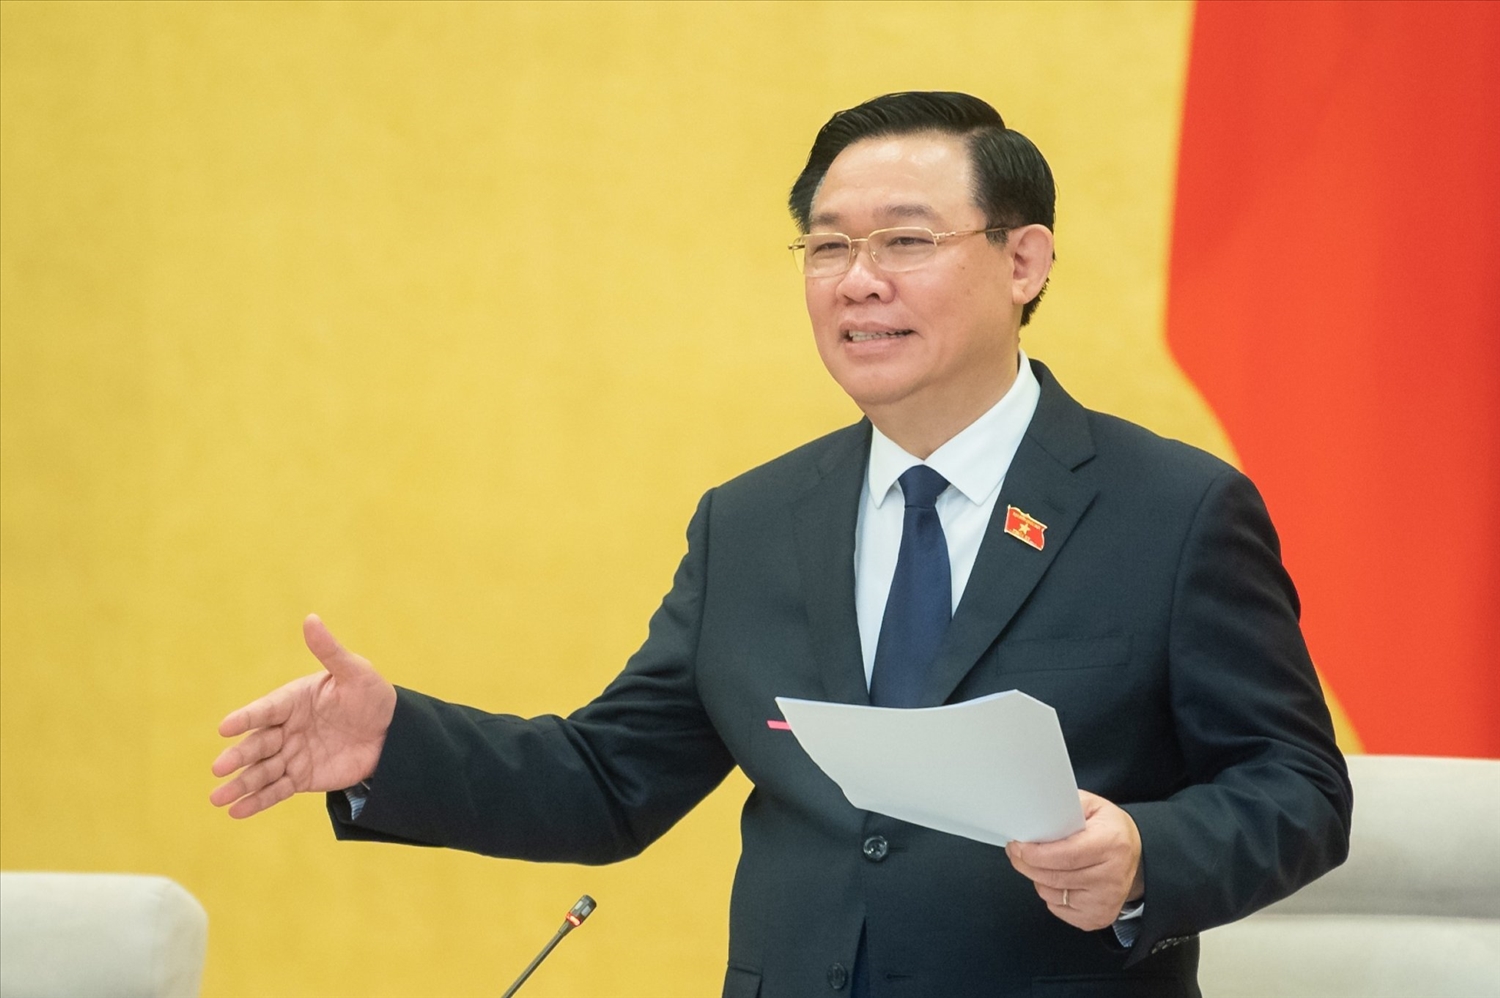 Chủ tịch Quốc hội Vương Đình Huệ phát biểu khai mạc phiên họp